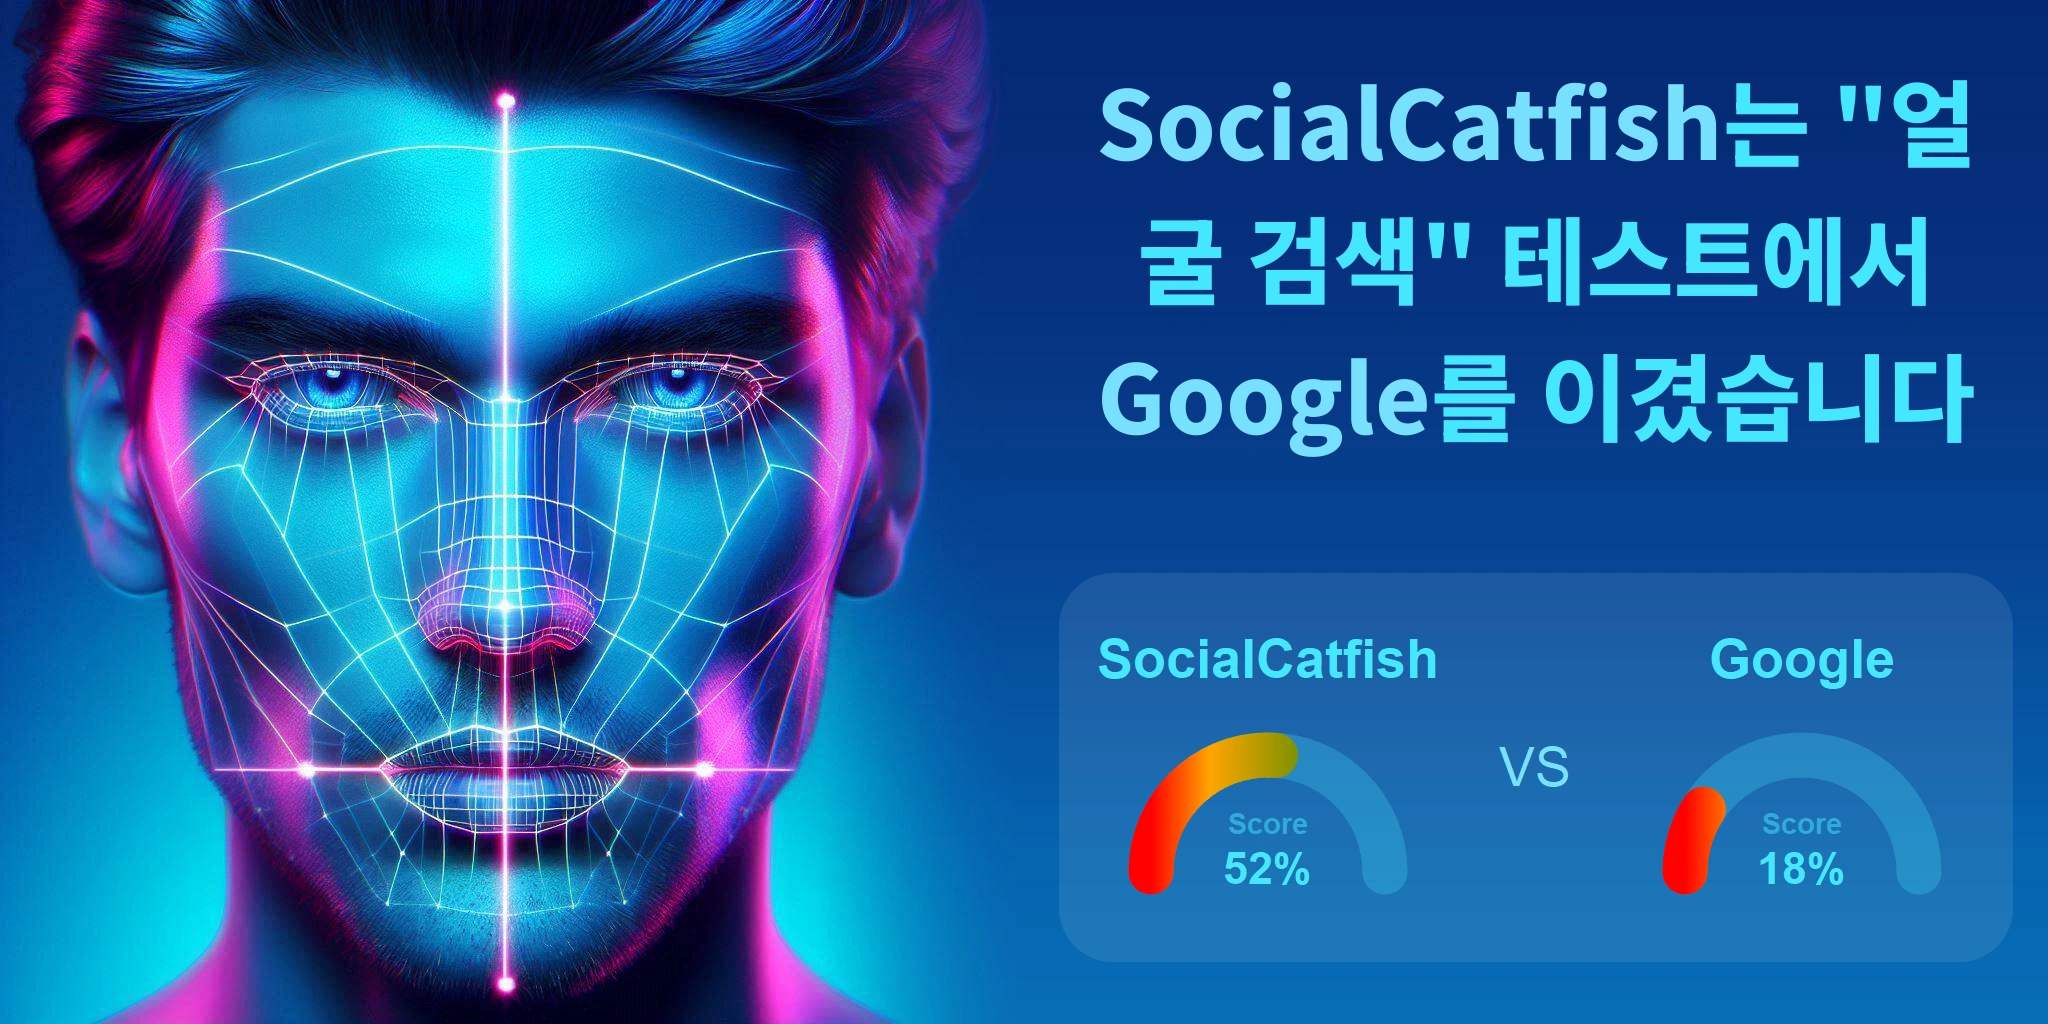 얼굴 검색에 더 좋은 것은 무엇입니까: <br>Google 또는 SocialCatfish?